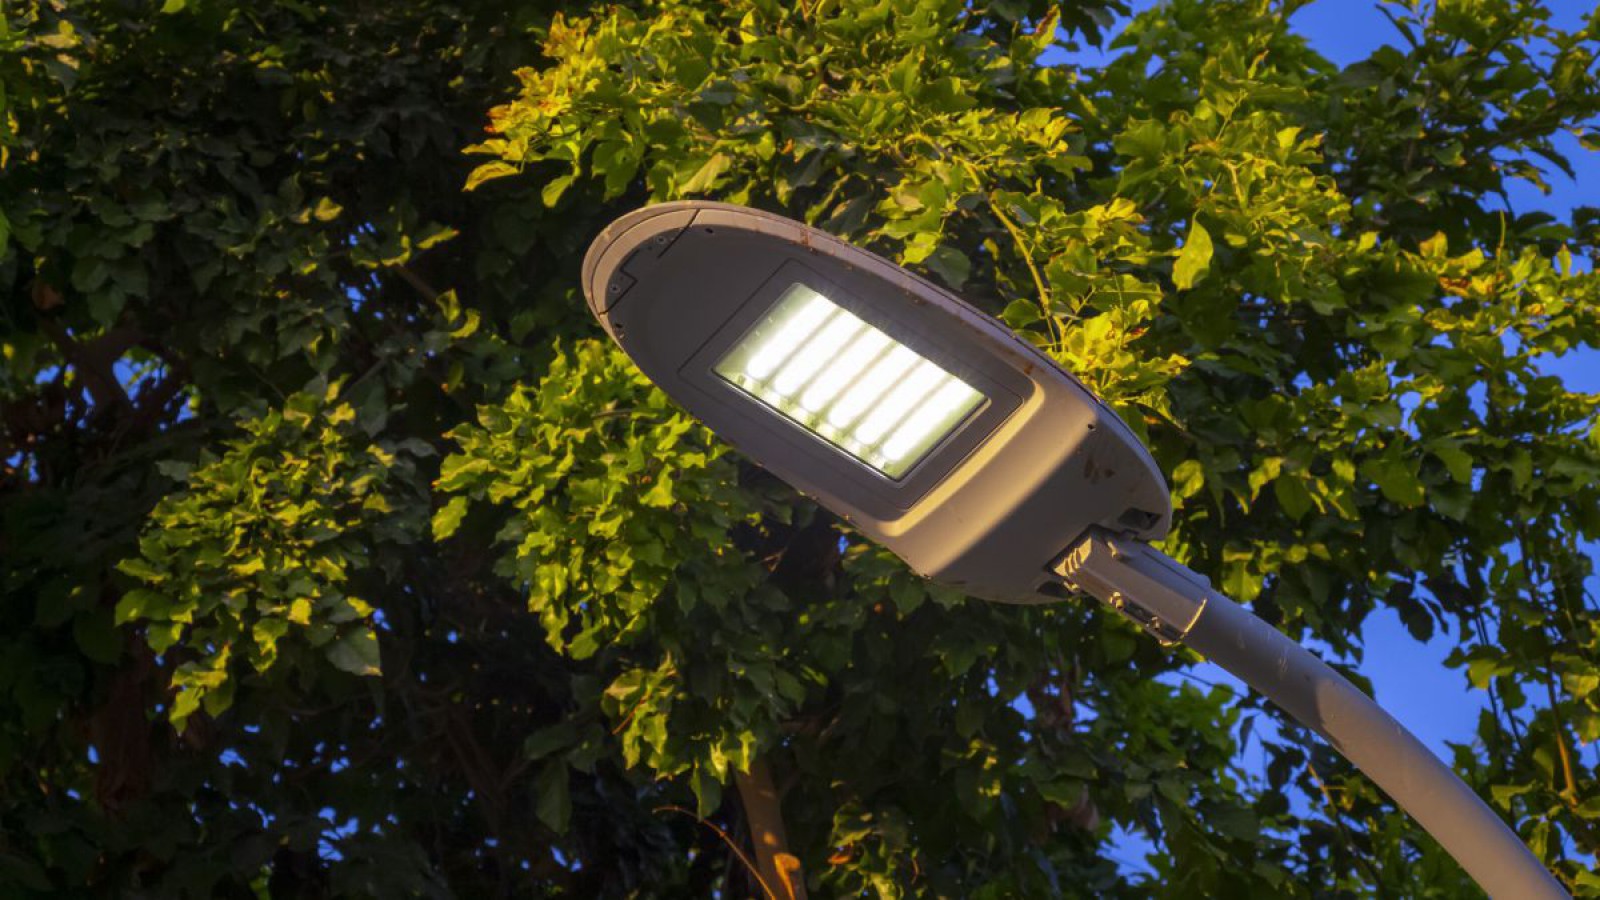 LED-Straßenlaterne von unten betrachtet, dahinter ein Baum